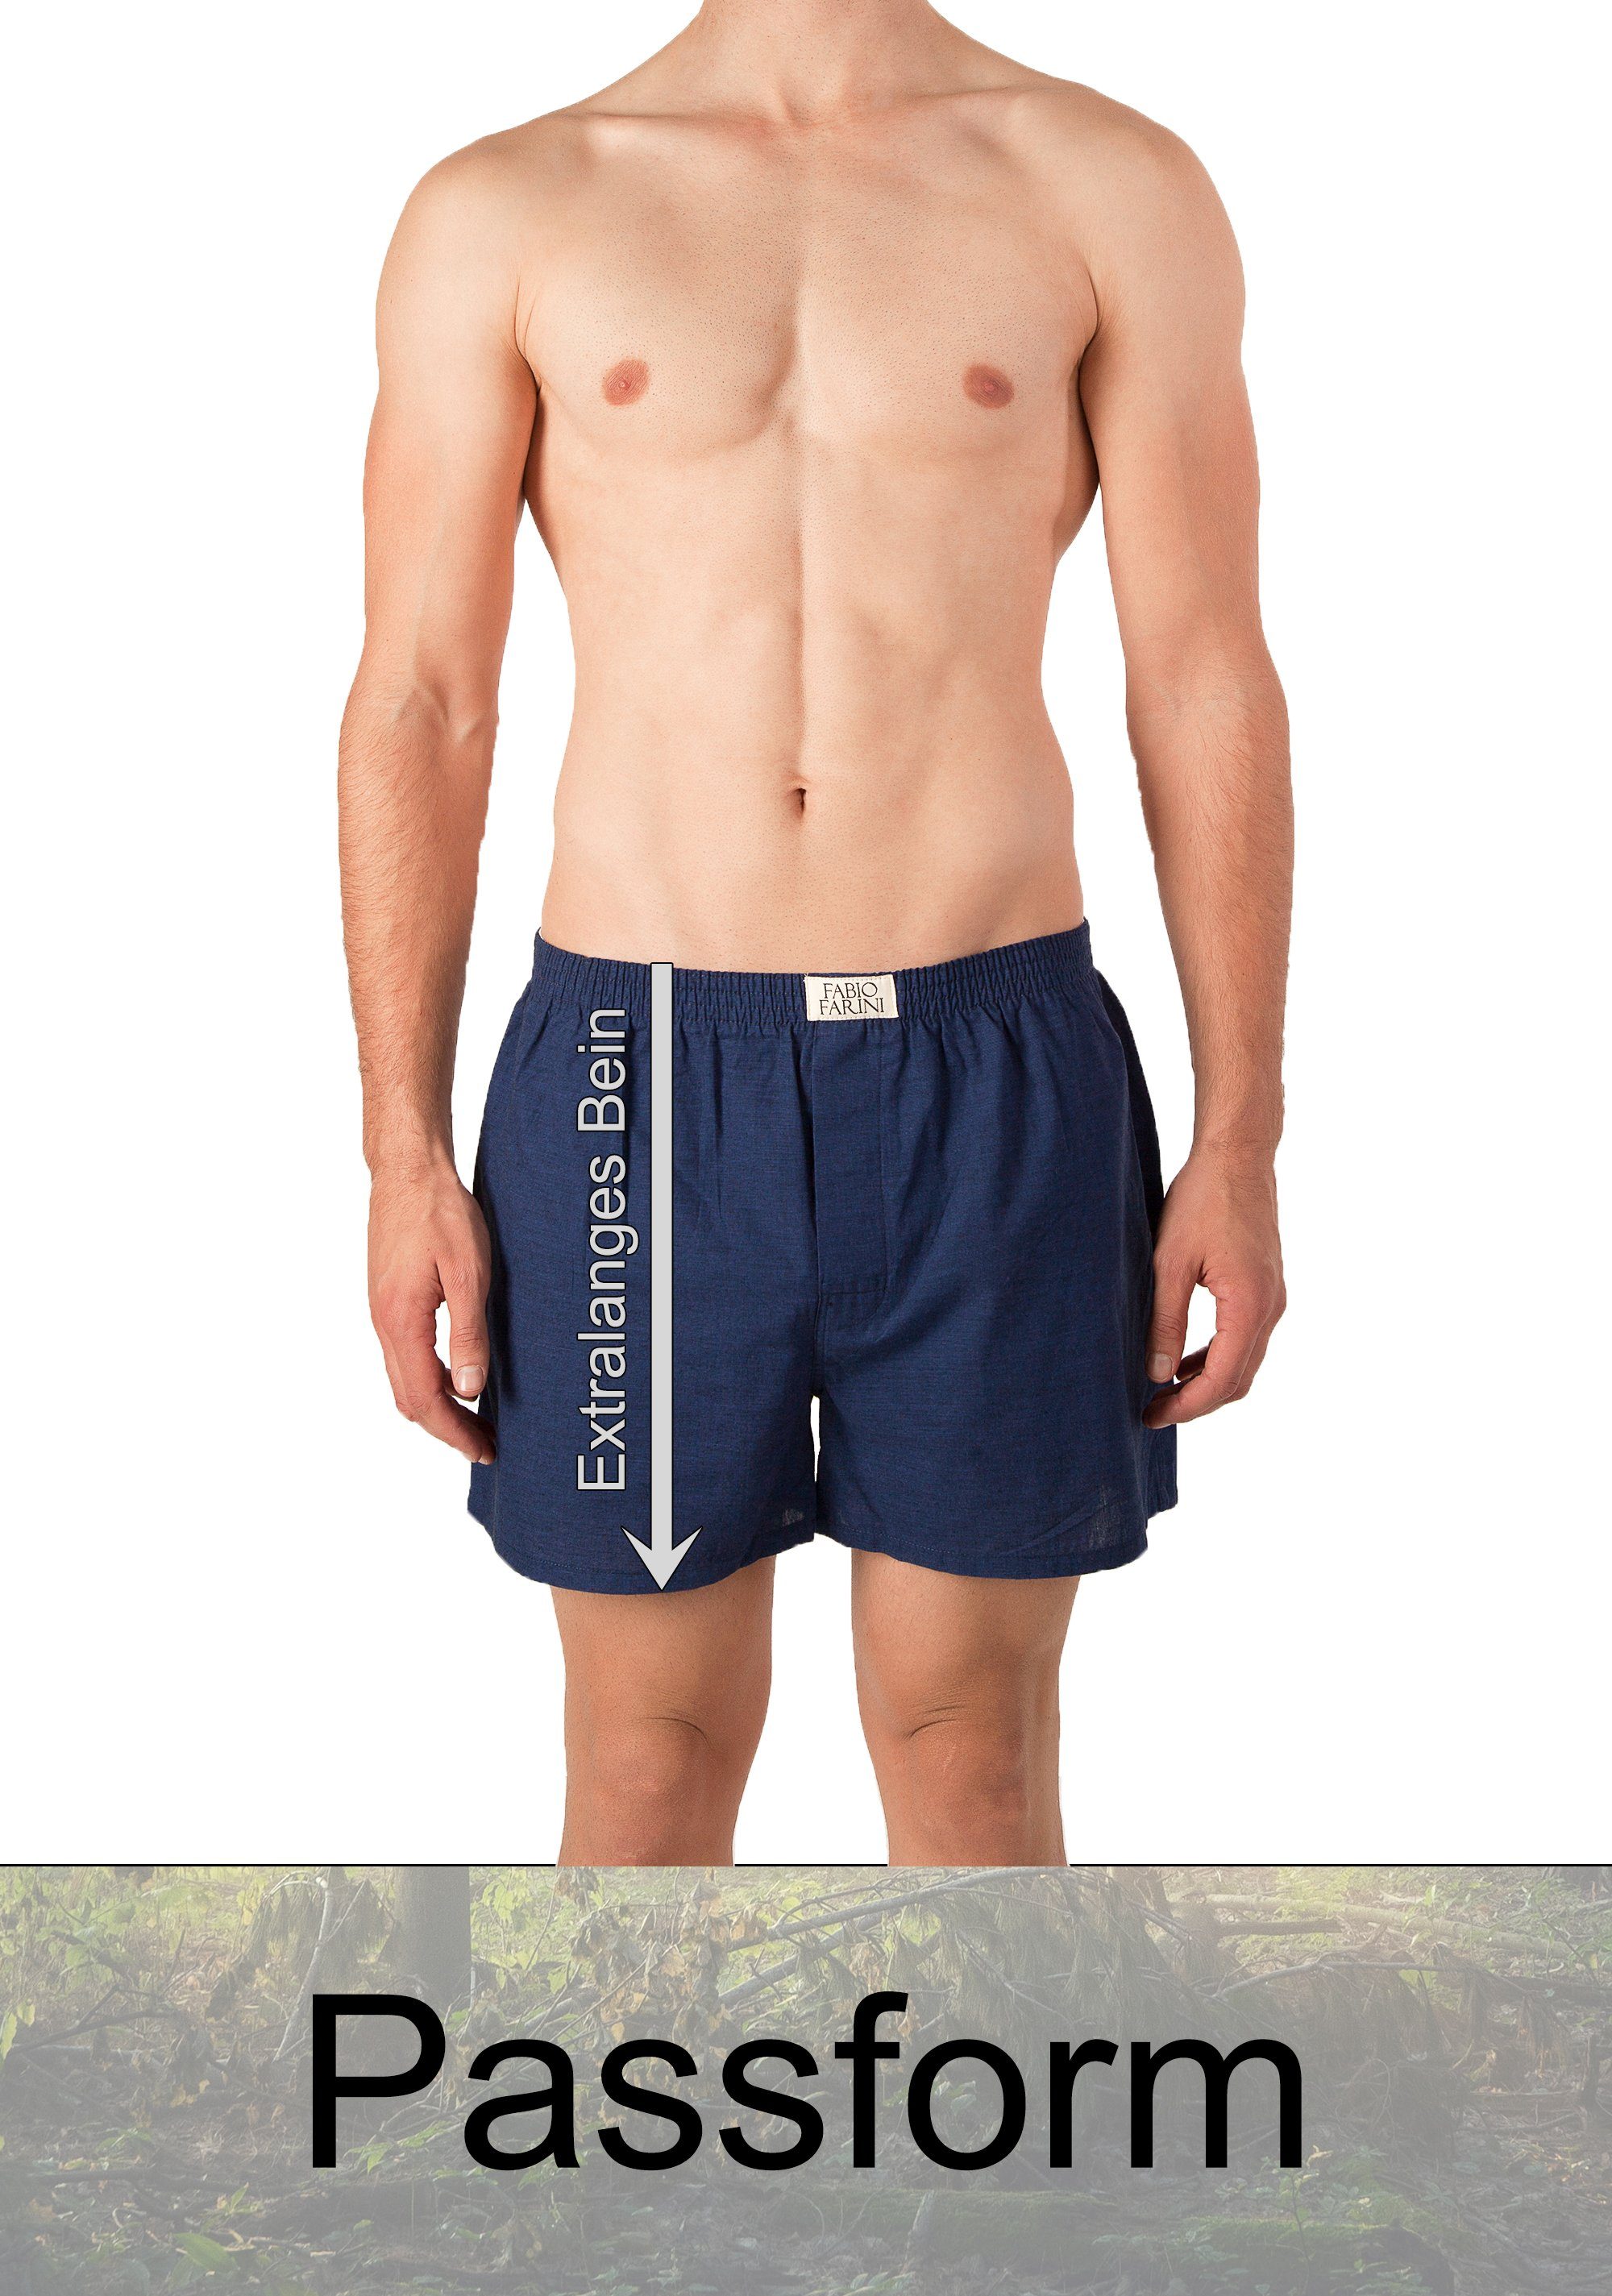 aus Webboxer 29 Farini Fabio (4-St) bequeme, Boxershorts Männer - Passform Set weite Baumwolle Unterhosen Herren